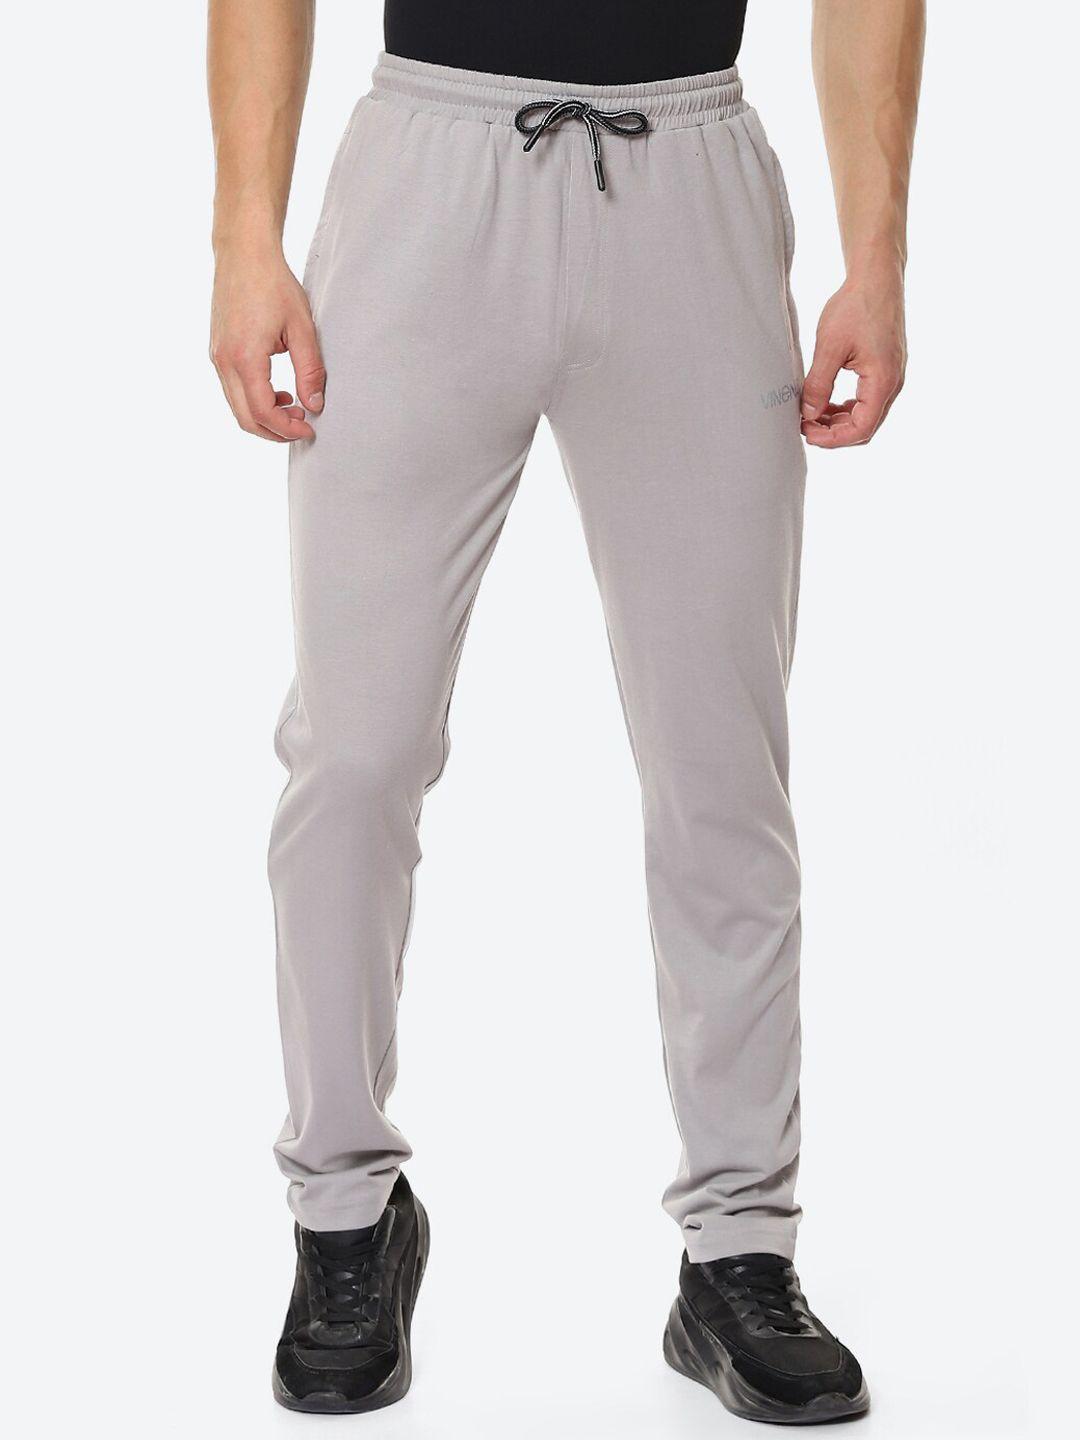 vinenzia-men-grey-melange-solid-pure-cotton-track-pants